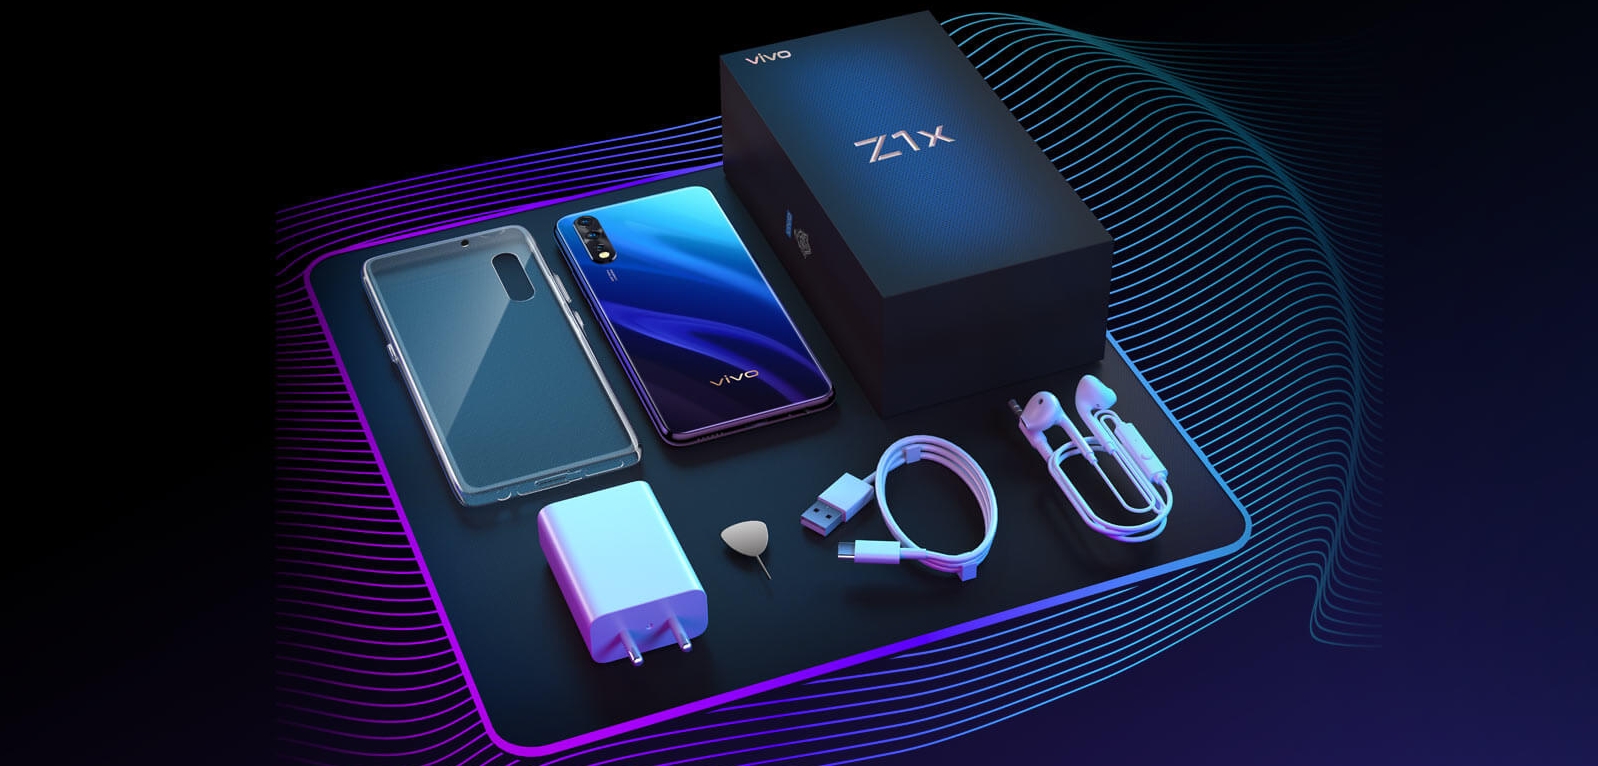 Smartphone Vivo Z1x - fordele og ulemper